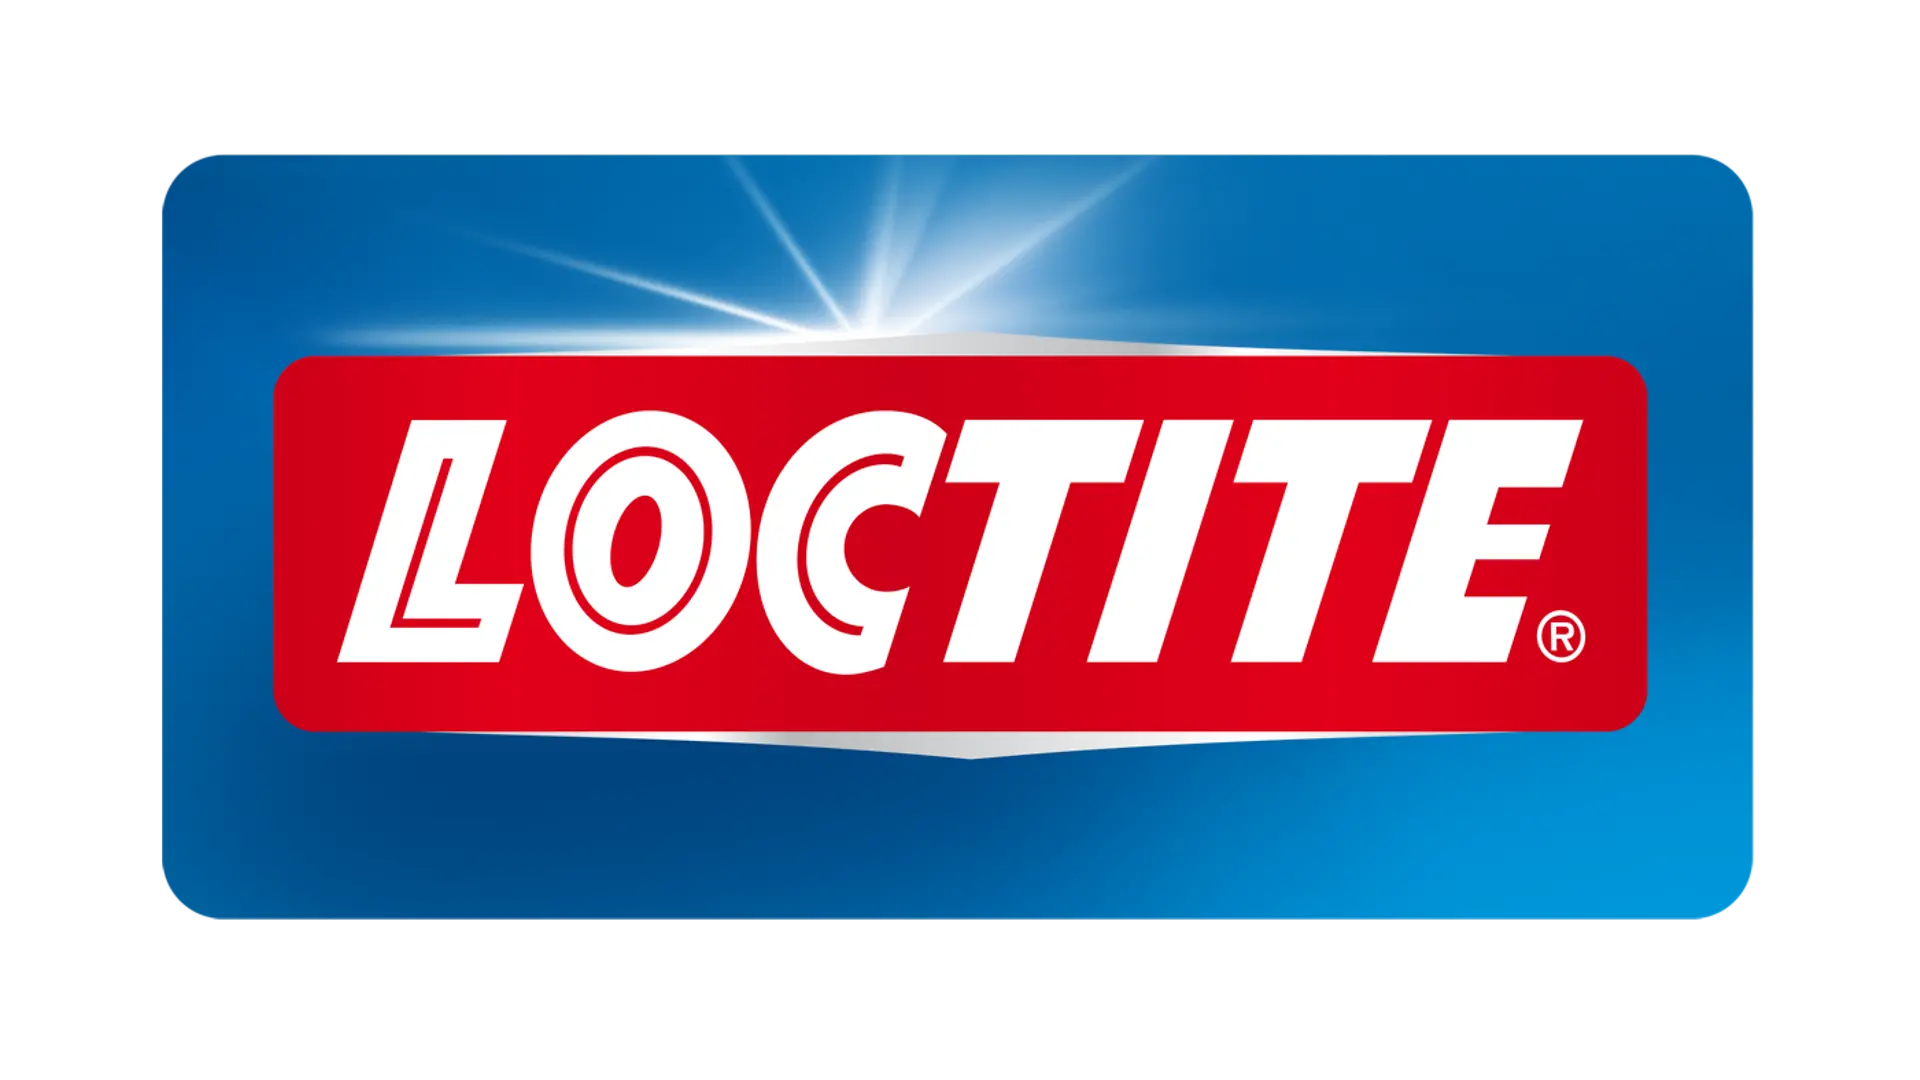 Loctite consumer logo